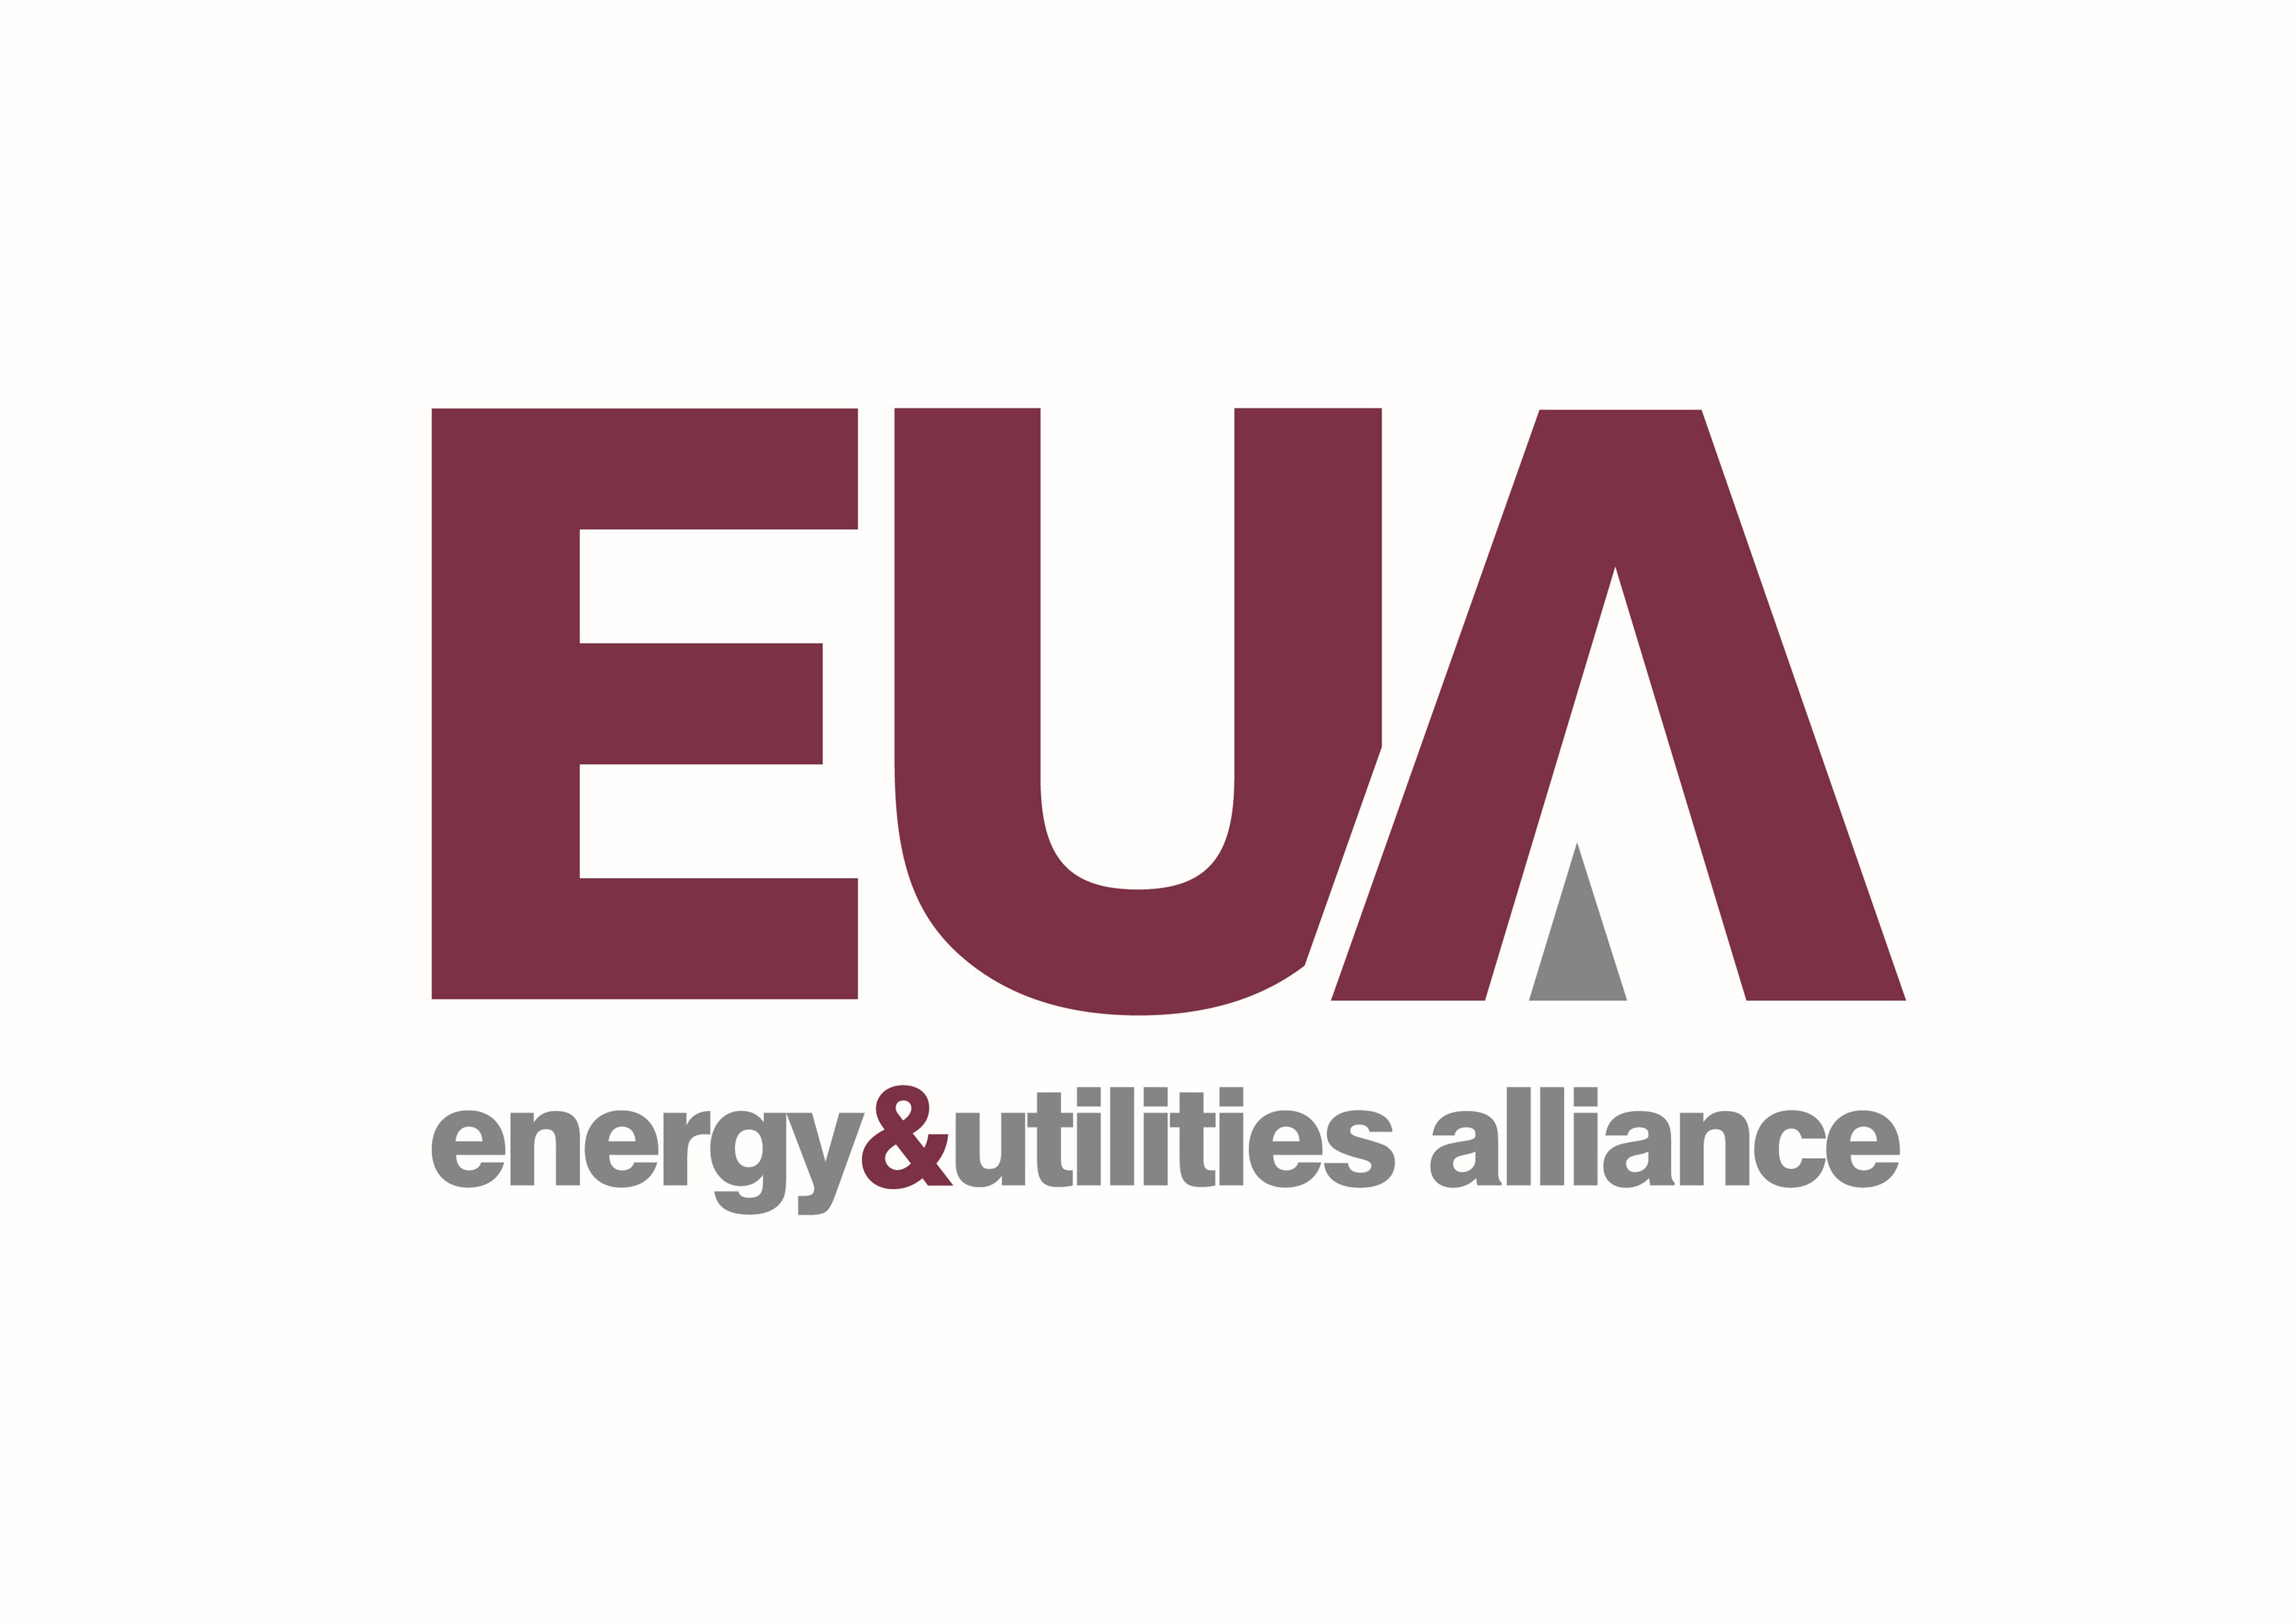 Energy and Utilities Alliance (EUA)